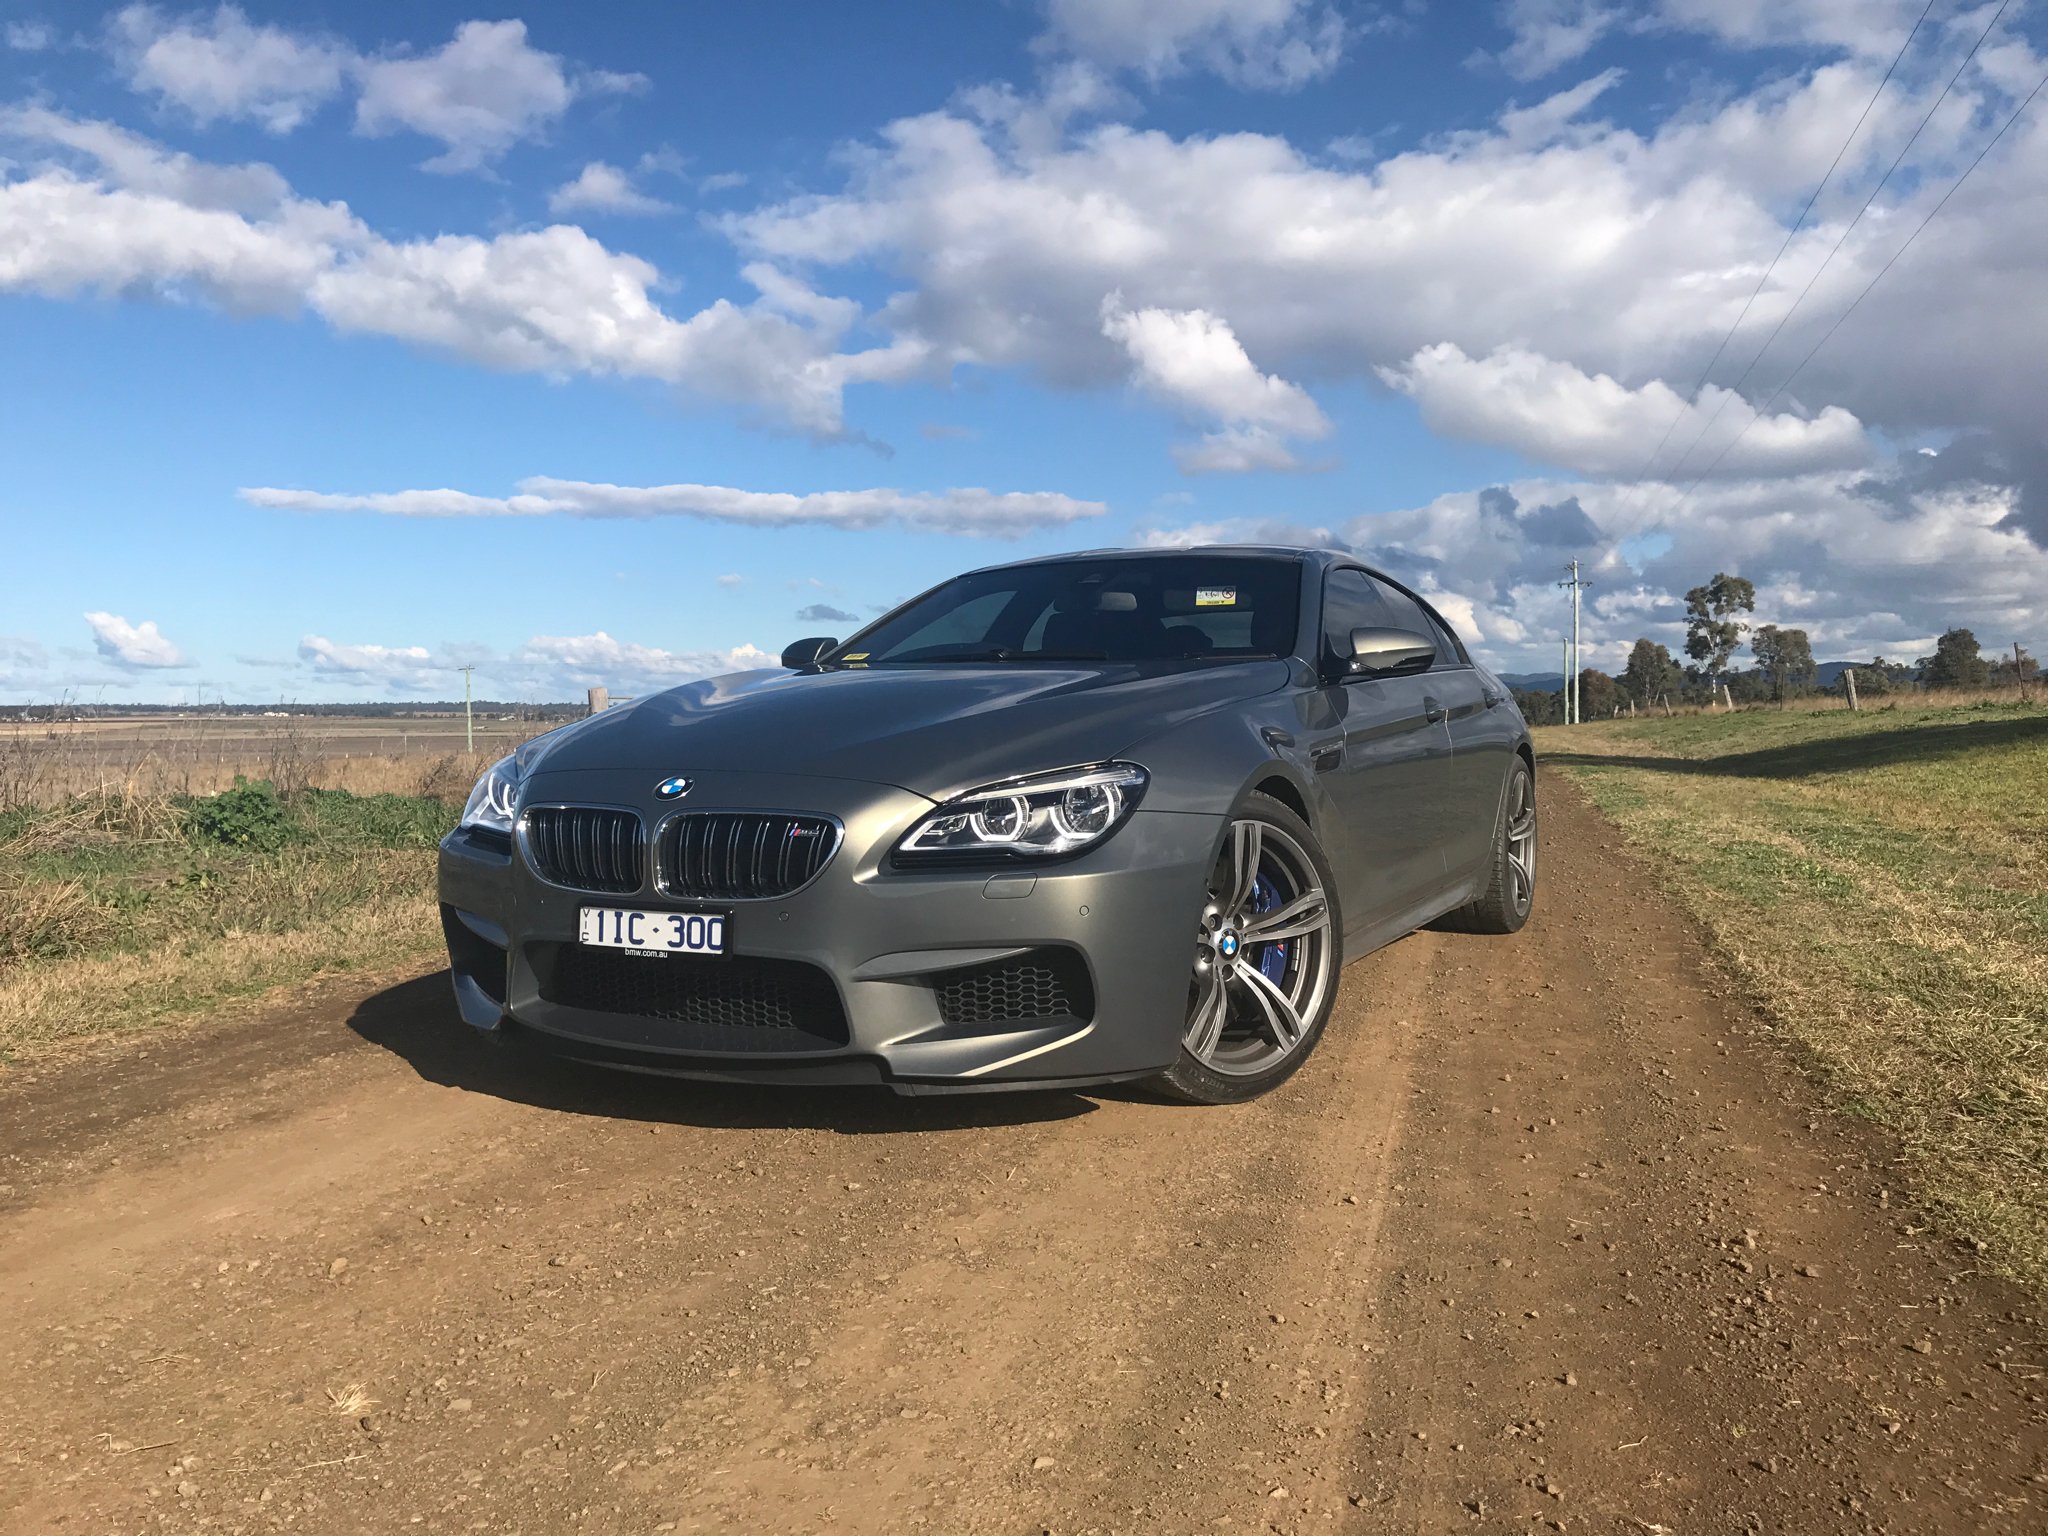 2017 BMW M6 Gran Coupe review - photos | CarAdvice